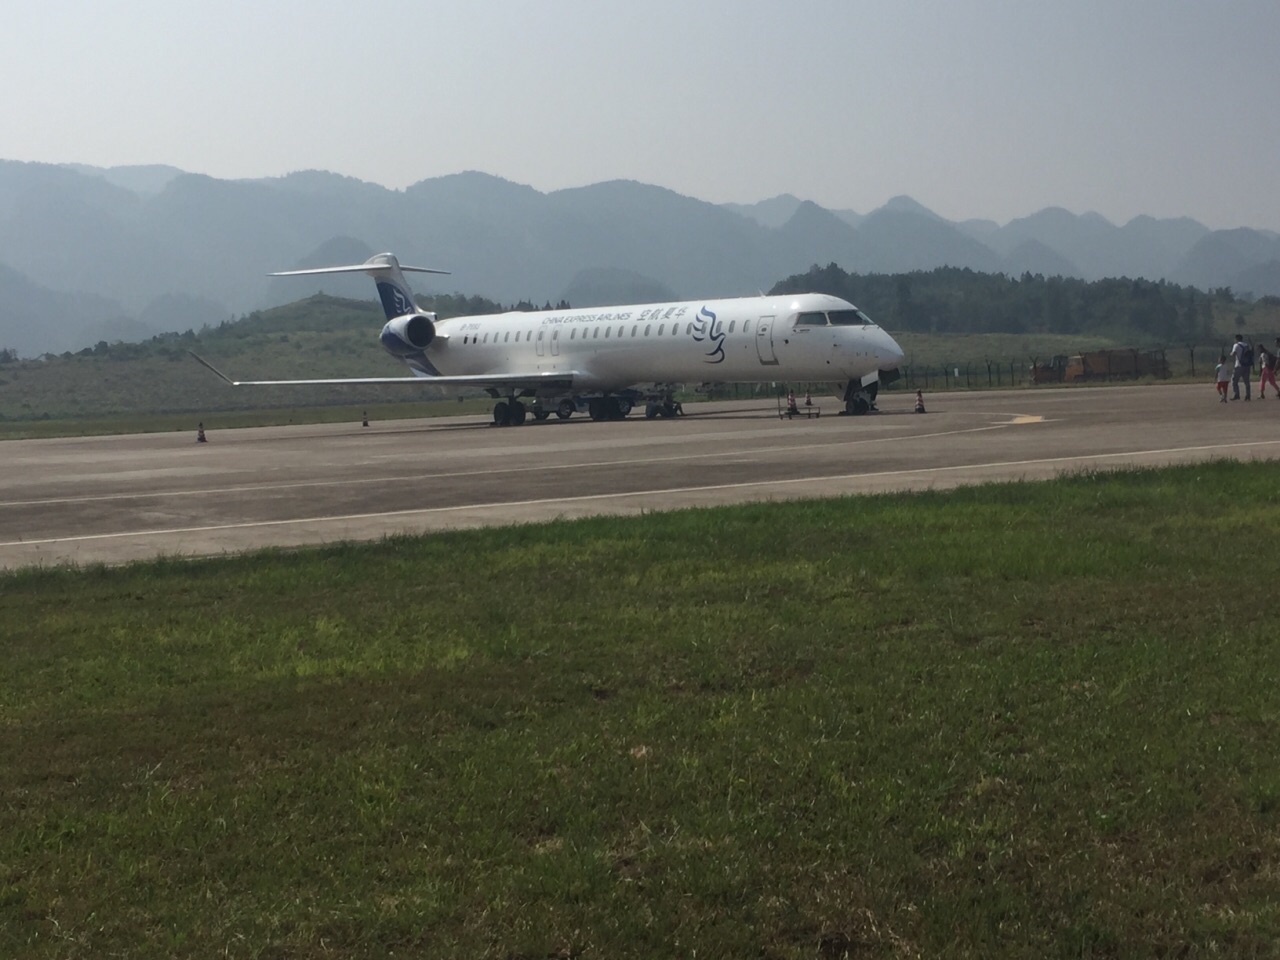 【携程攻略】重庆黔江武陵山机场,非常迷你的小机场